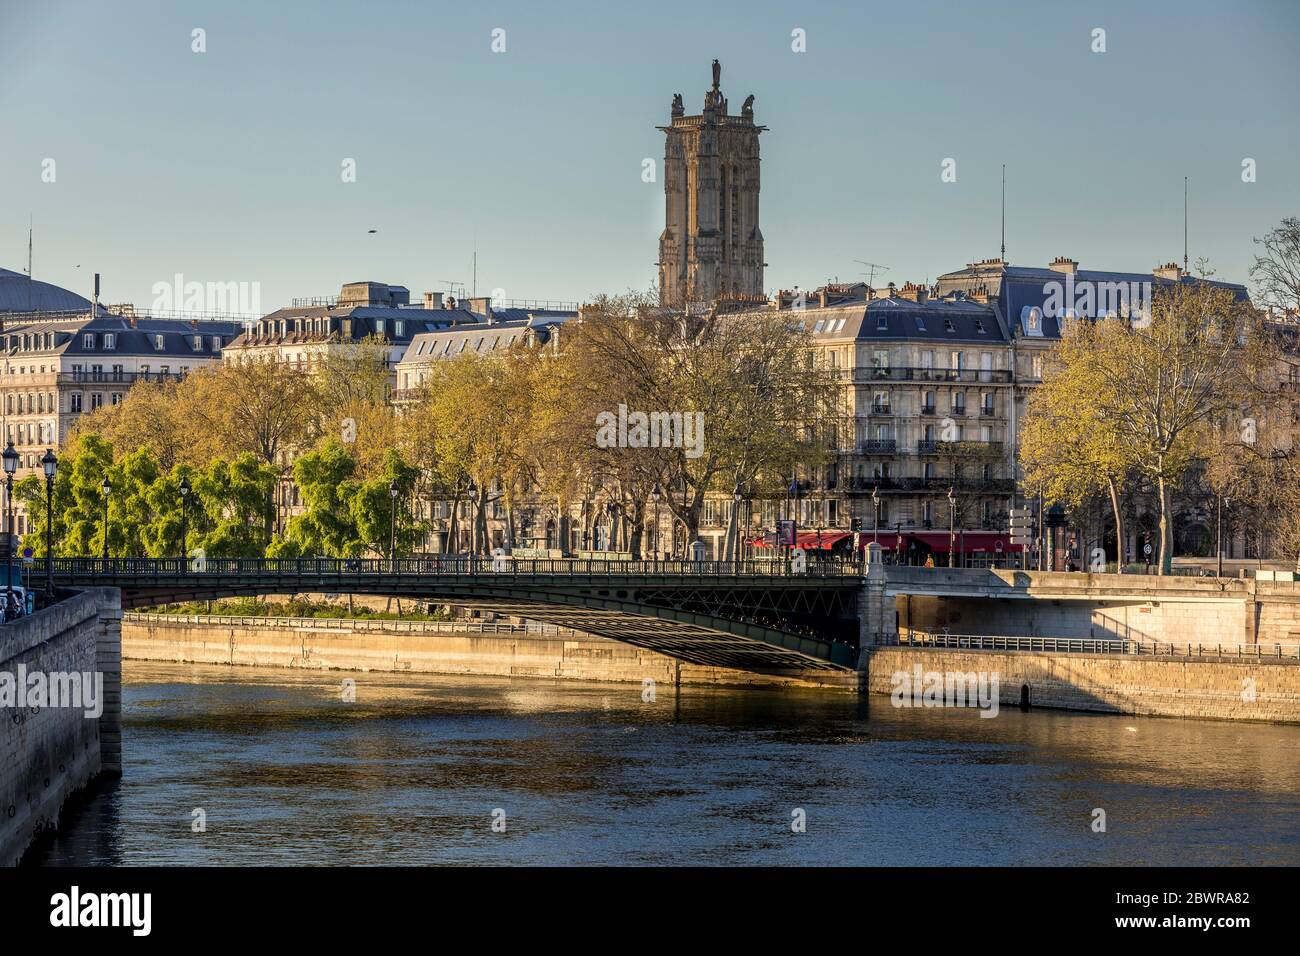 Paris, France - 5 avril 2020 : 20e jour de confinement à cause de Covid-19. Personne, pas de voiture sur le pont de la Seine à Paris Banque D'Images